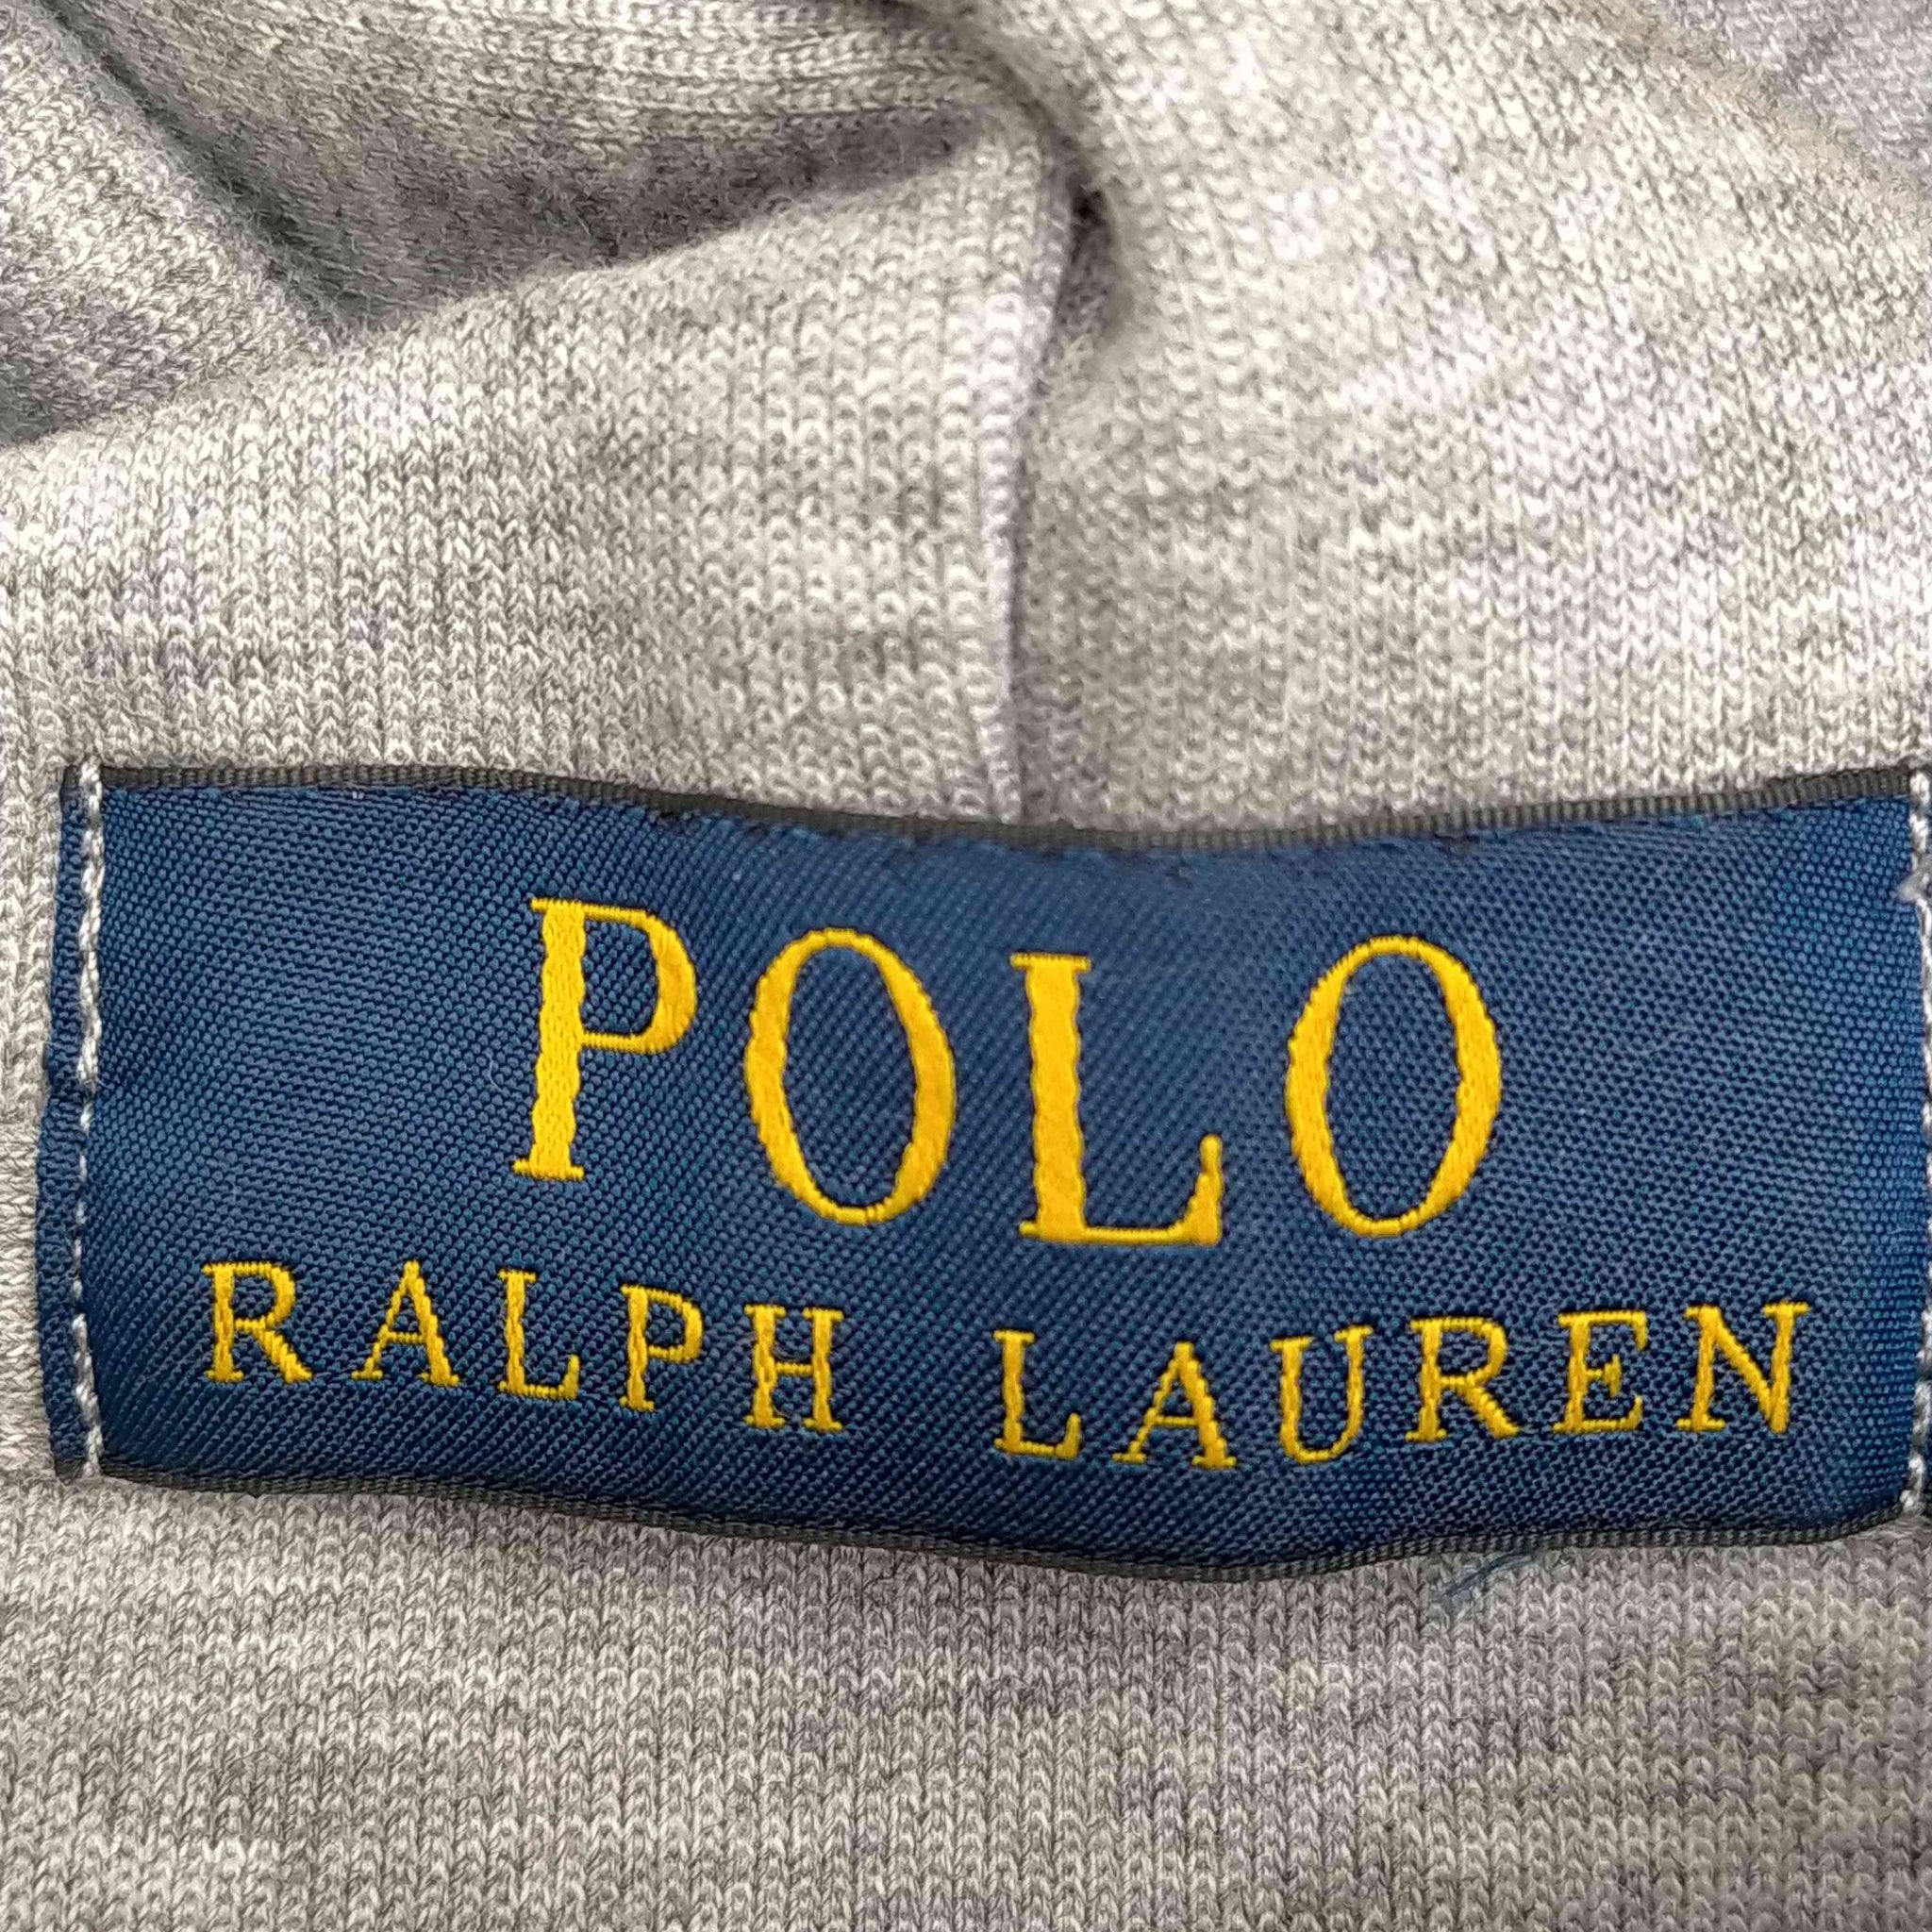 POLO RALPH LAUREN(ポロラルフローレン)ロゴ パーカー リブライン